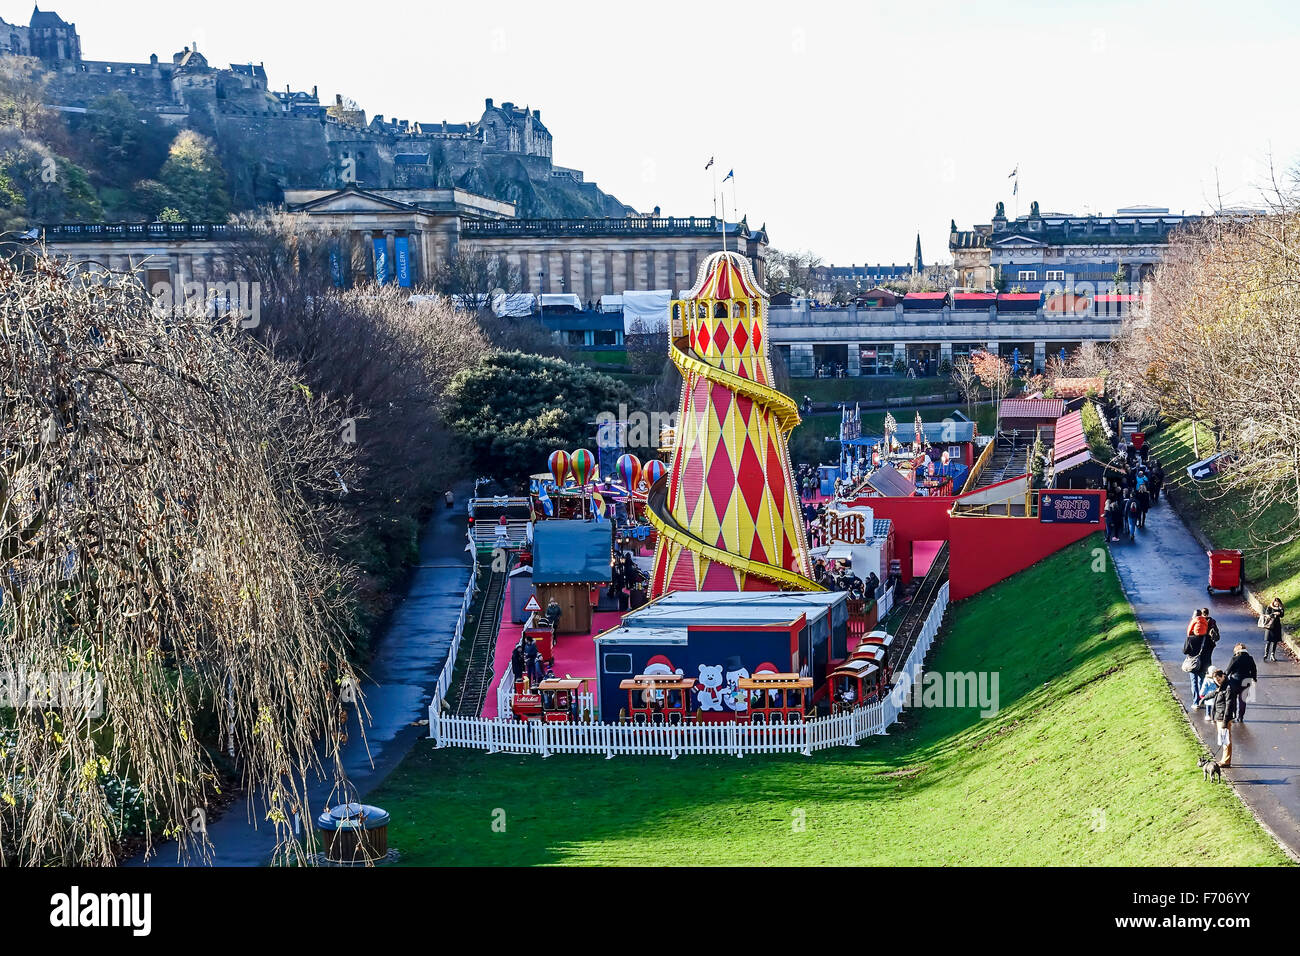 Marché de Noël 2015 d'Édimbourg au Princes Gardens Edinburgh avec le Père Noël et des terres en passant par train à vapeur Banque D'Images